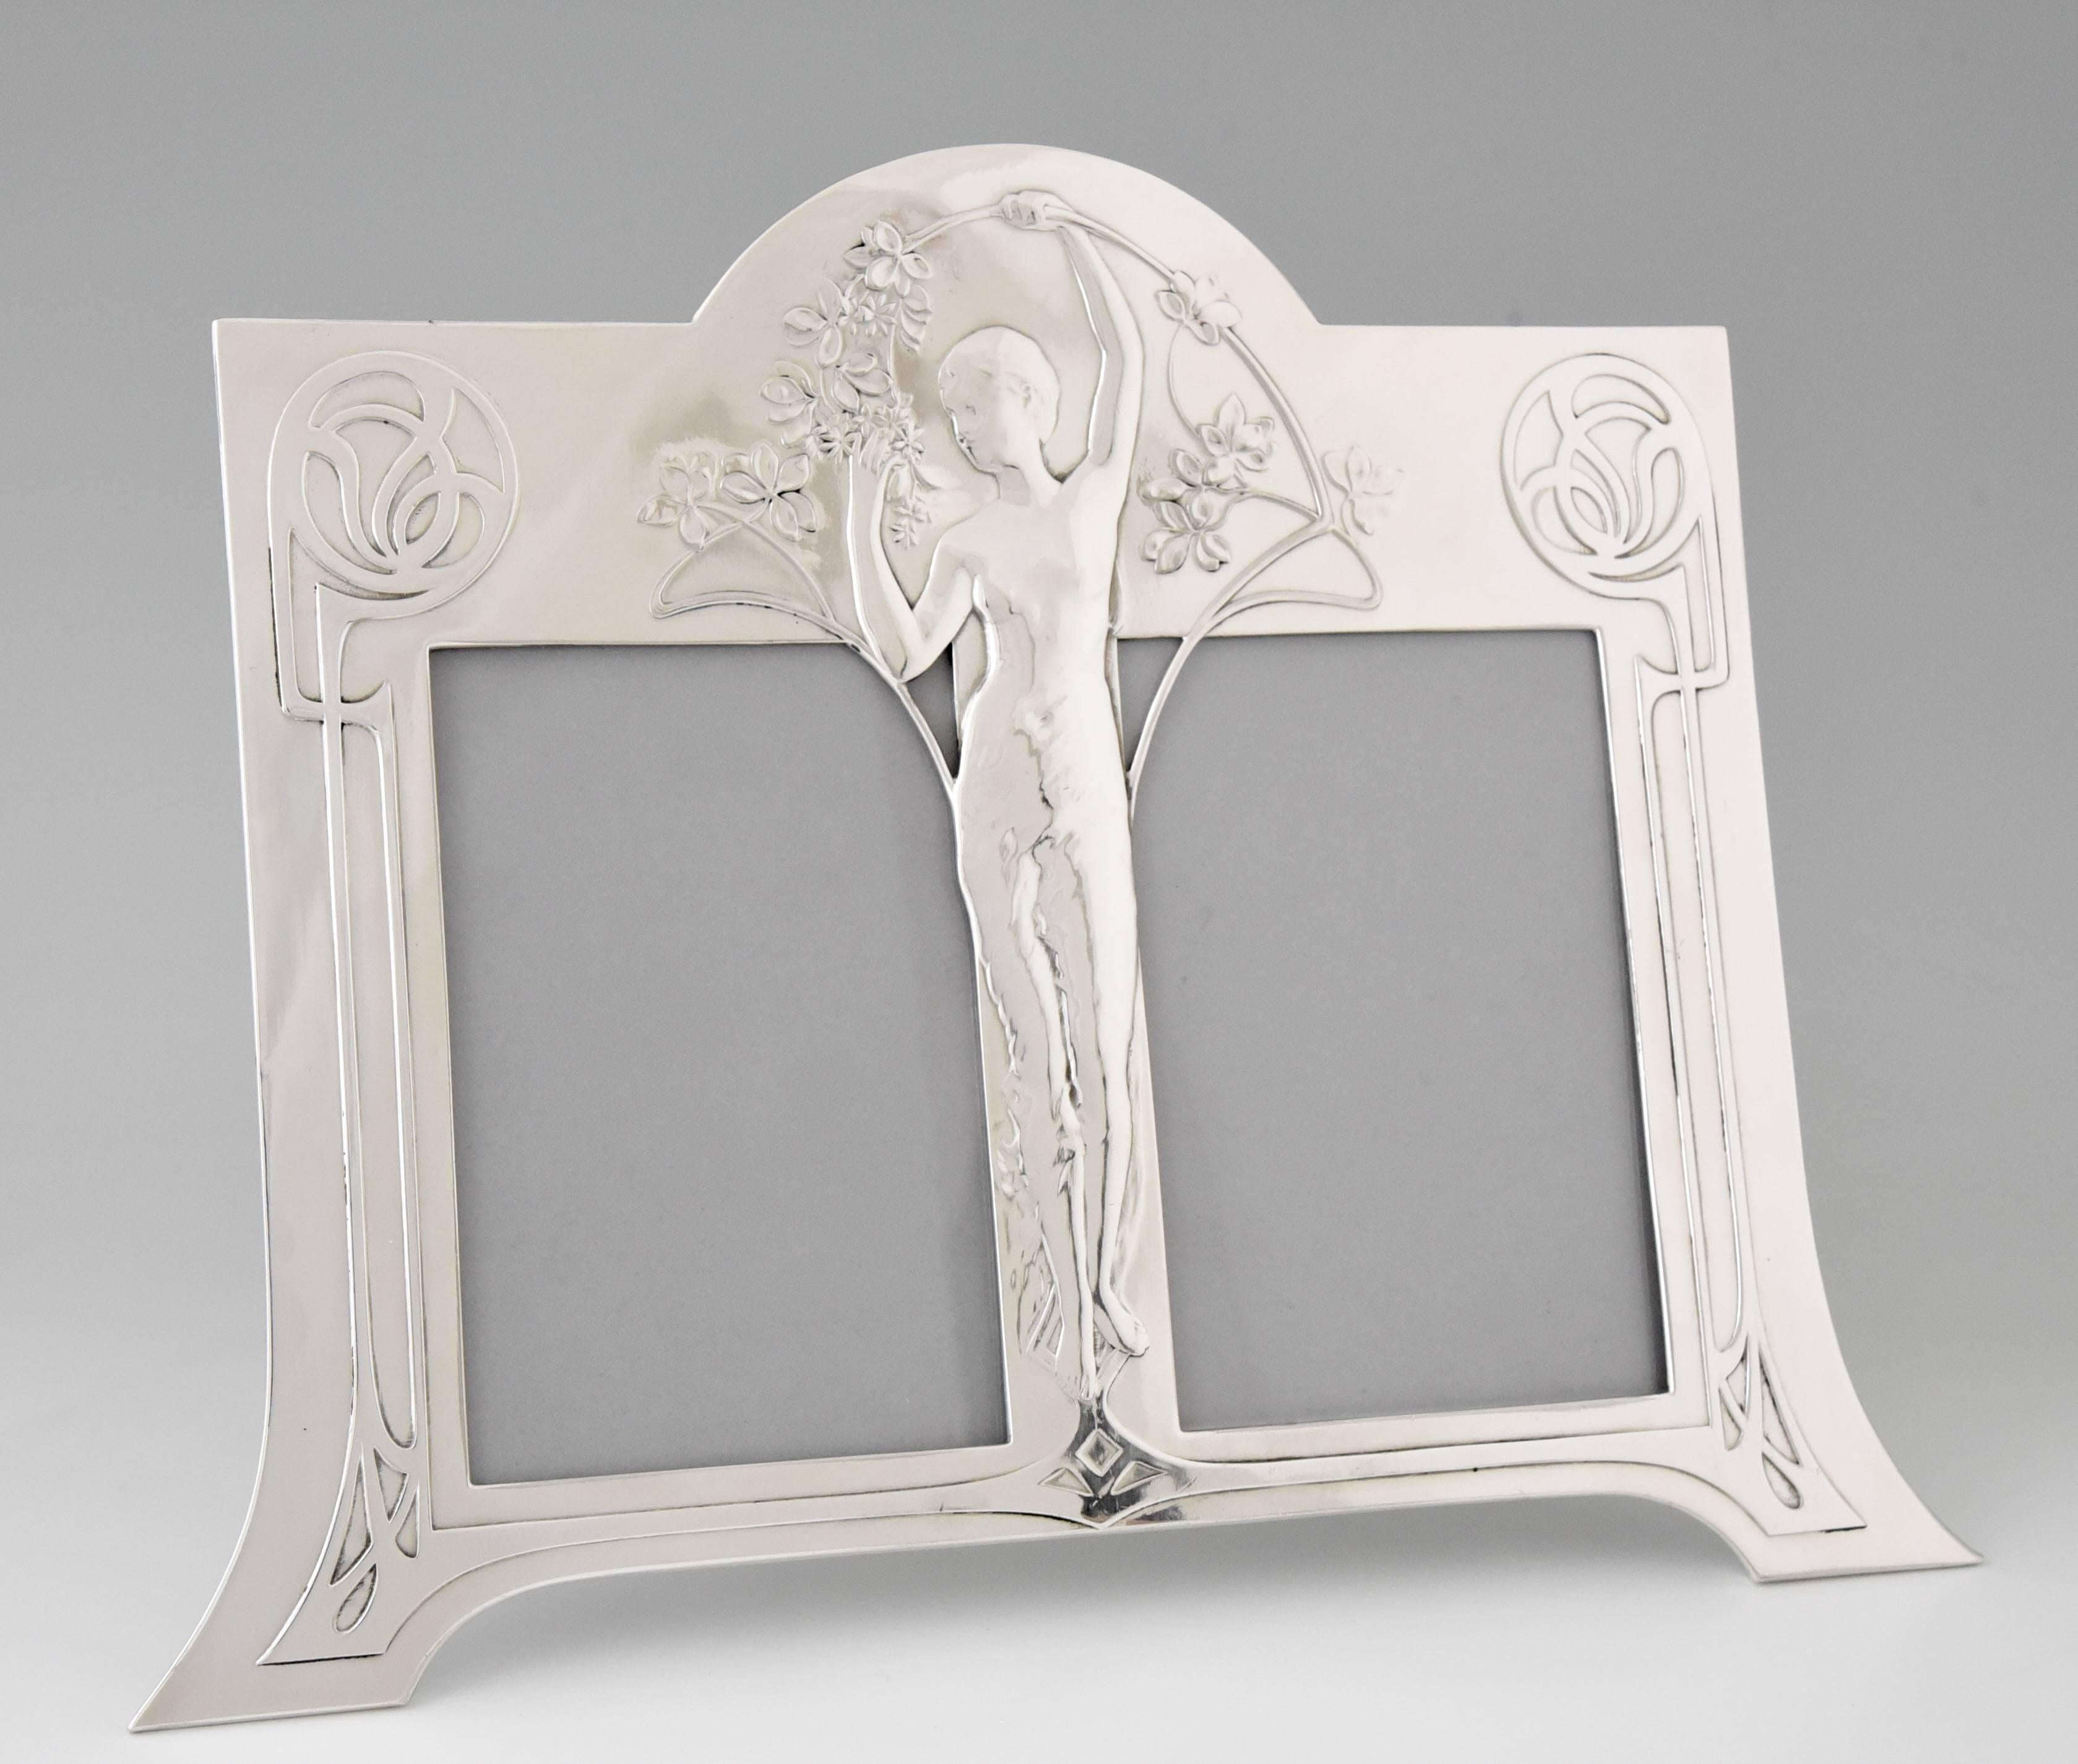 Description: 
Double photo frame with an Art Nouveau maiden holding a branch. 

Artist/ Maker:
WMF, Württembergische Metallwaren Fabrik. 

Signature/ Marks: 
WMF mark, B, ox.

Style:
Art Nouveau. 

Date:
1906. 

Material:
Britannia